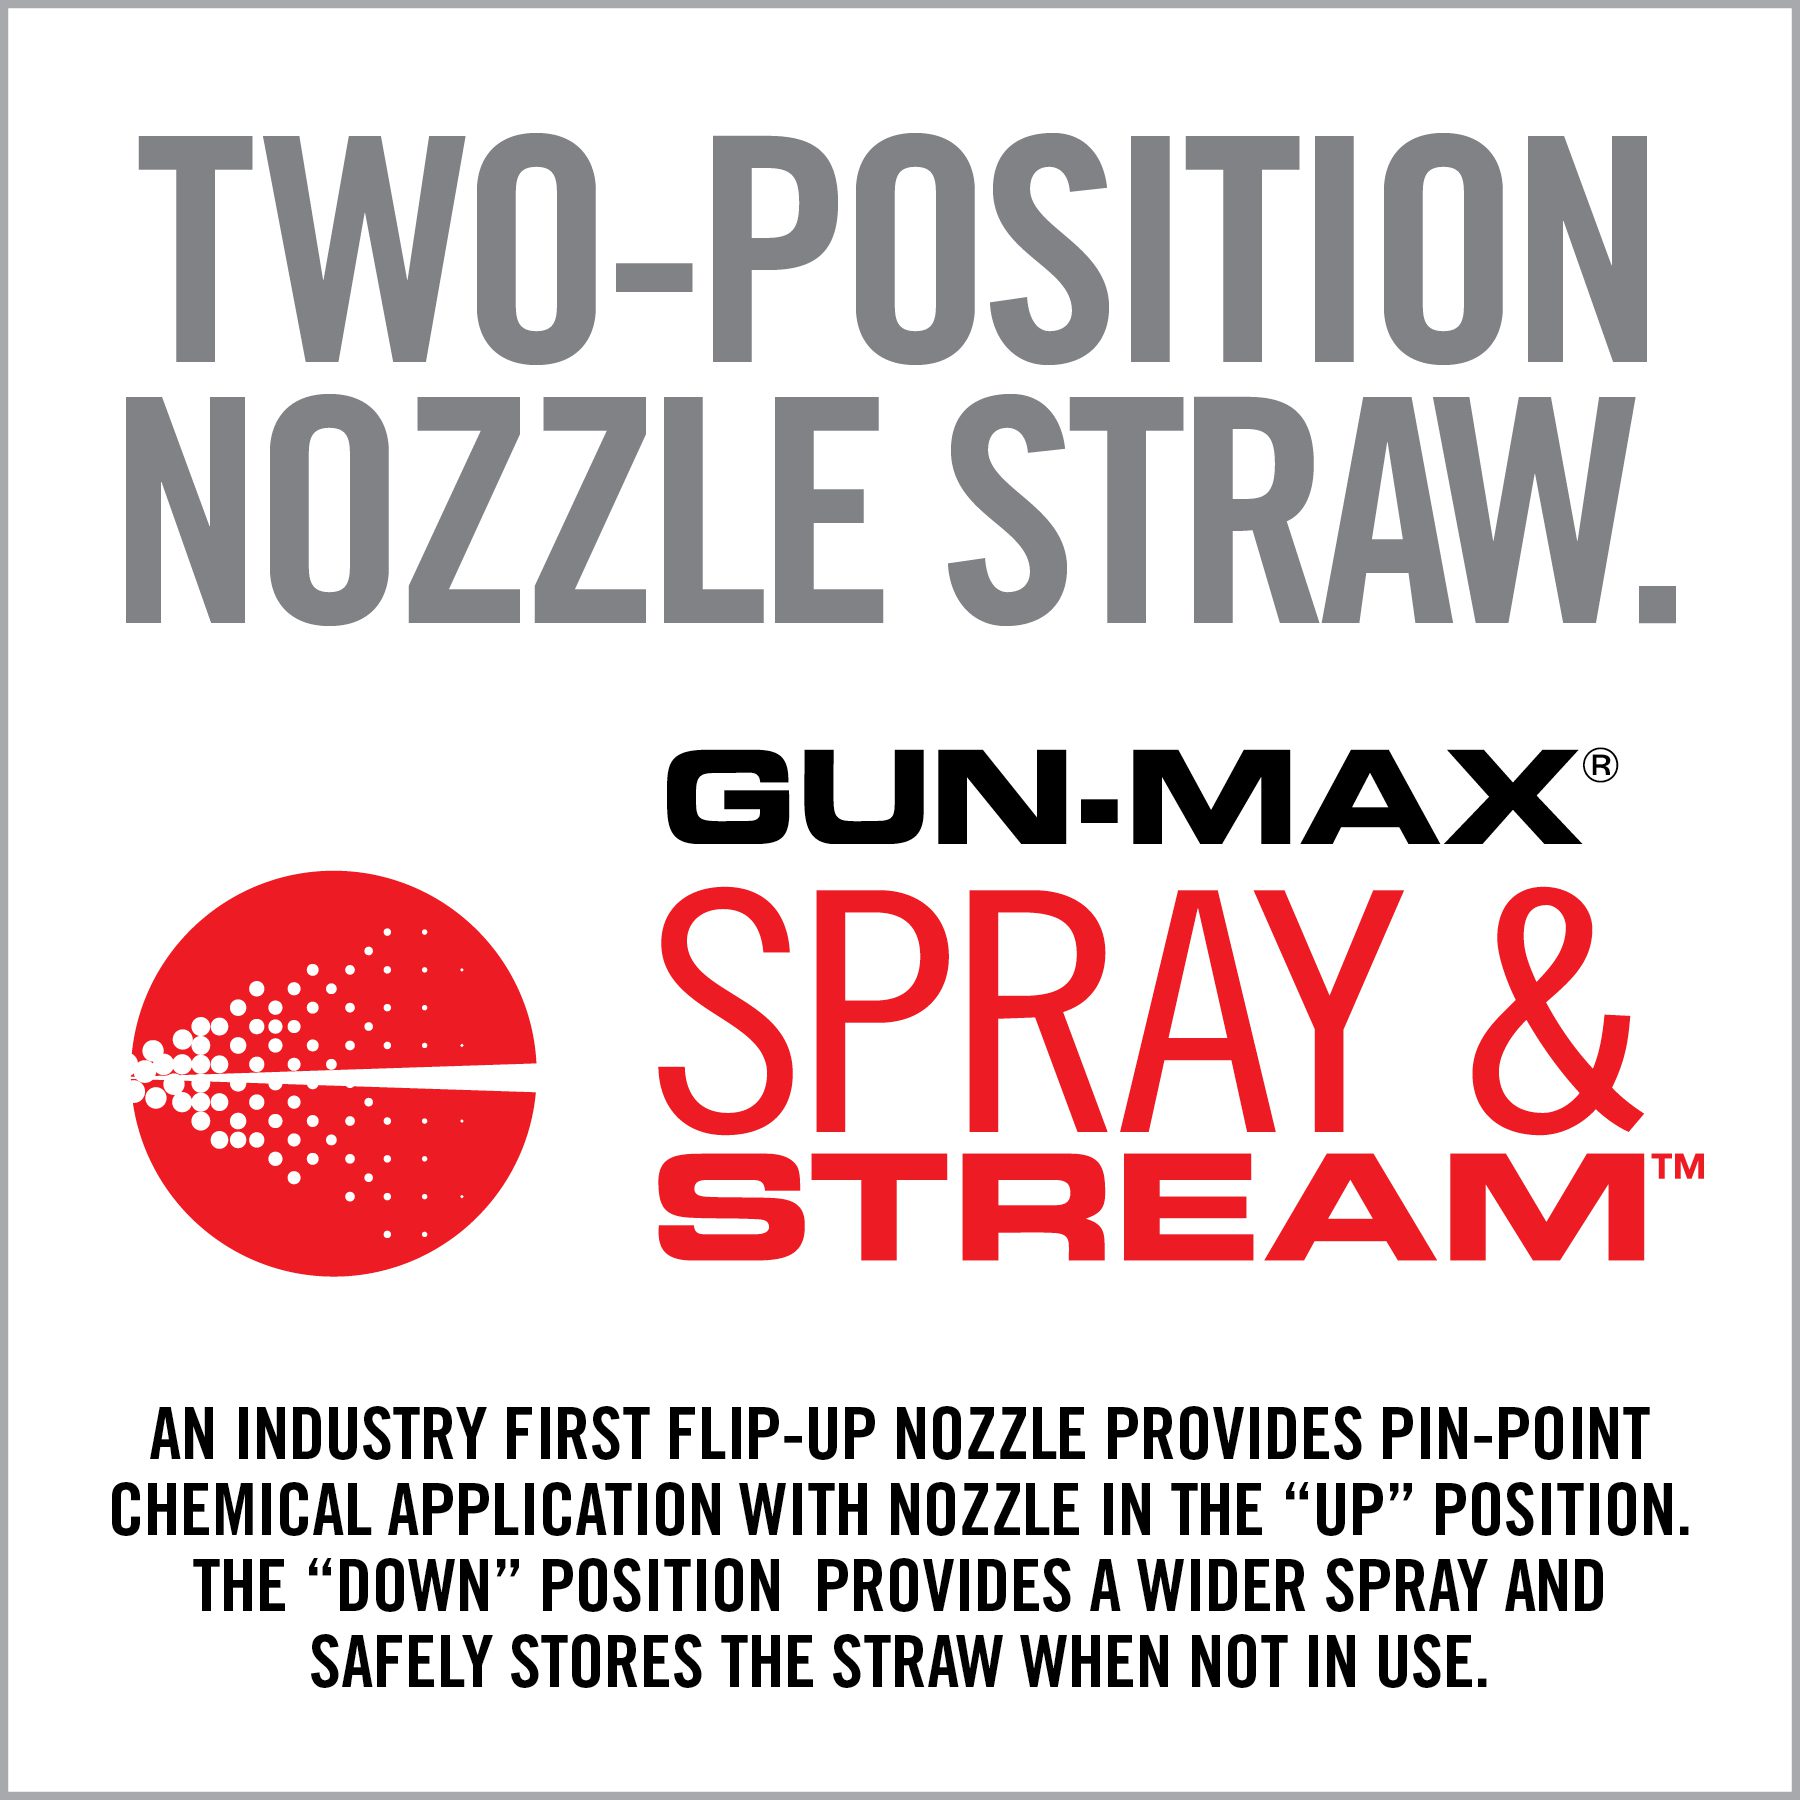 two - position nozzle straw gun - max spray & stream